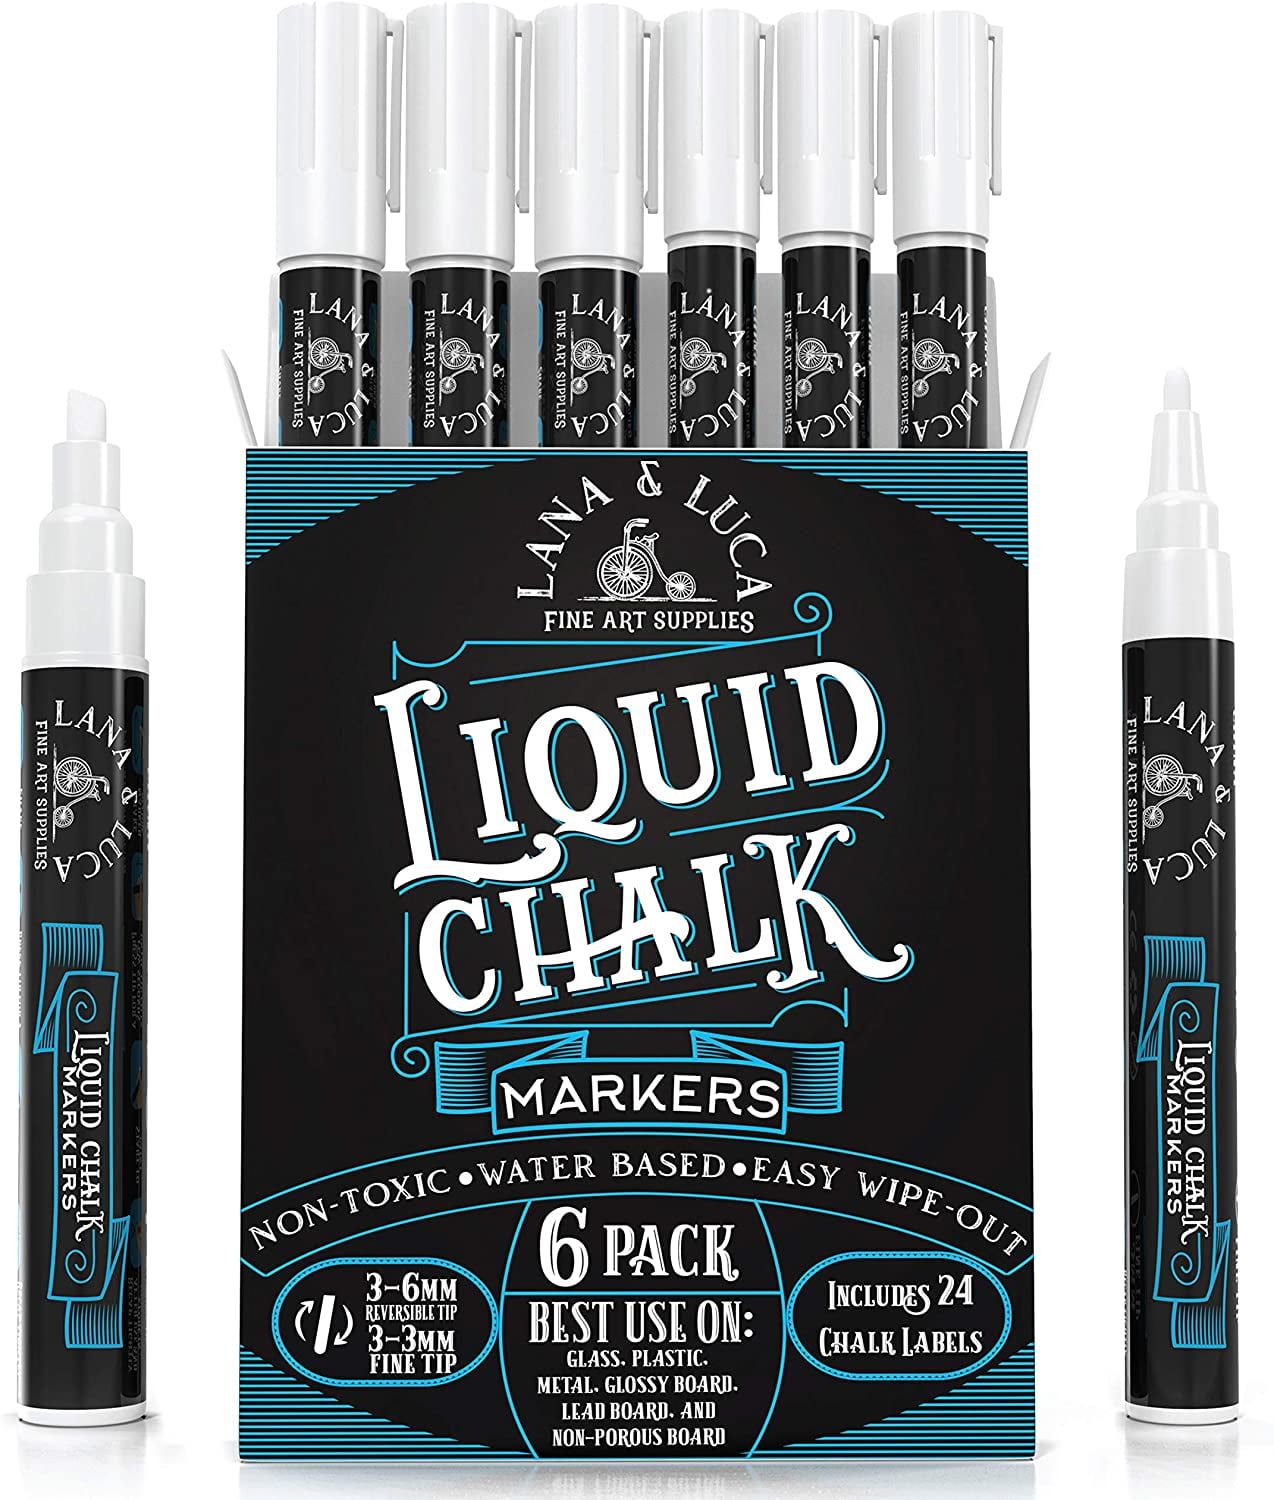 Liquid Chalk Markers (12pc) Erasable Chalkboard Pen for Blackboard (USA)  Kids